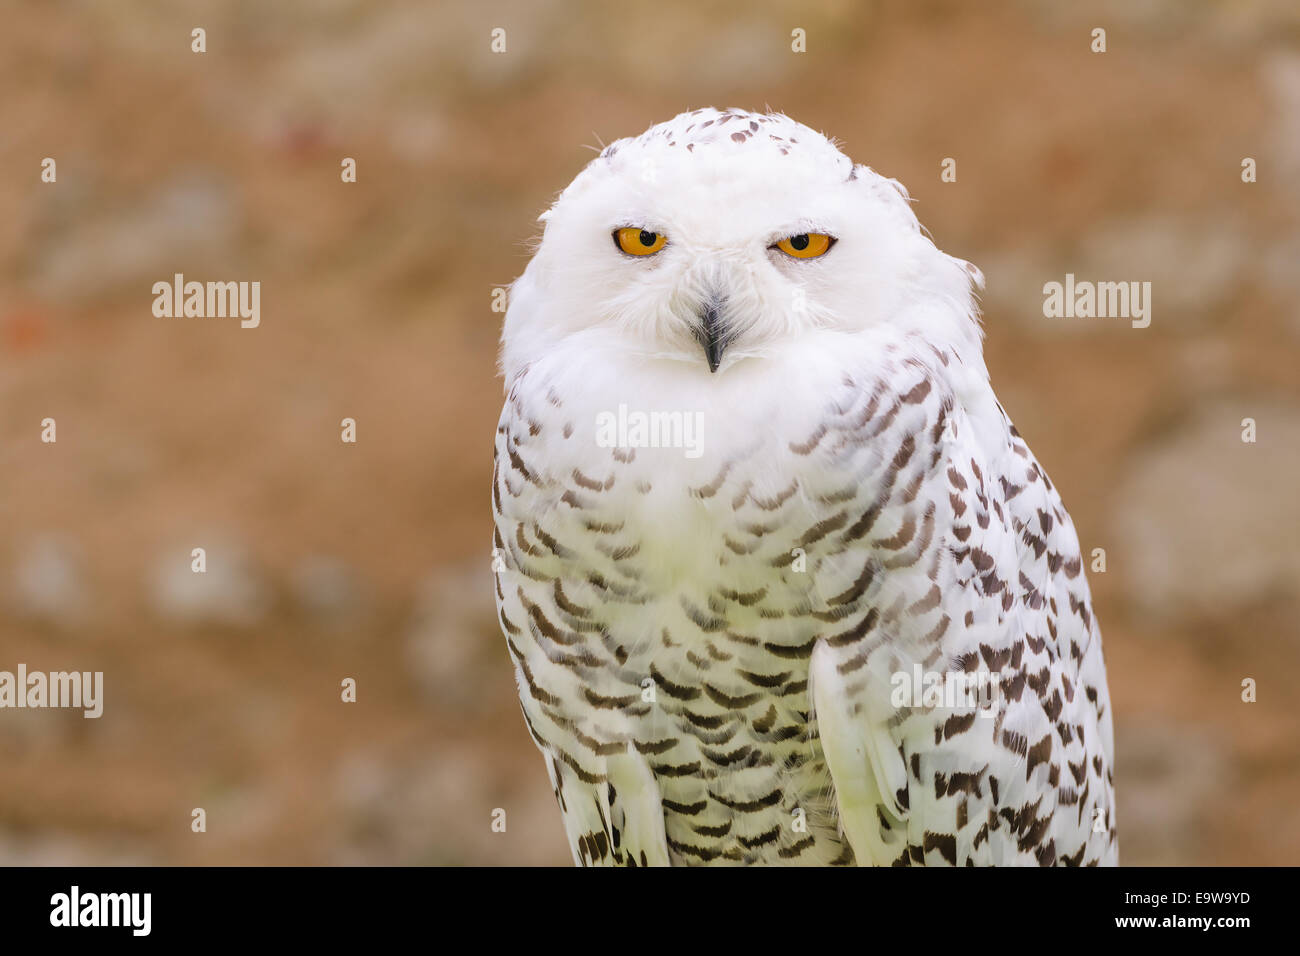 Porträt von wild stillen Raptor Vogel weiß Schneeeule Blick auf das Objektiv der Kamera mit gelben Augen Stockfoto